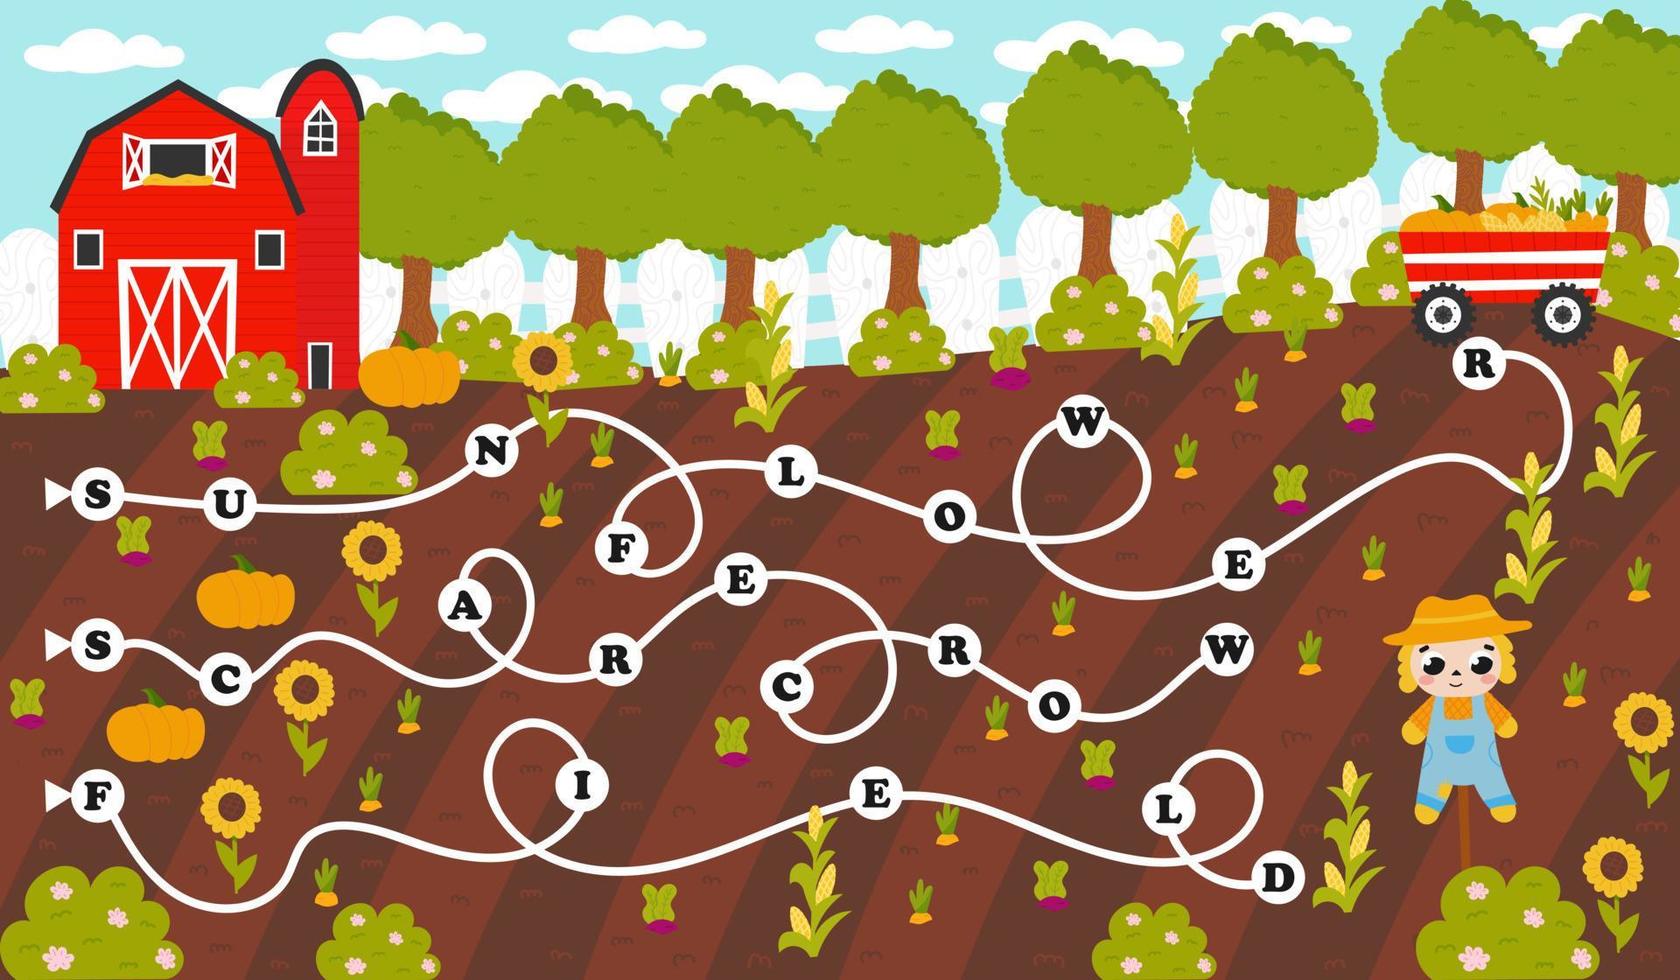 färgrik ord labyrint för barn med engelsk jordbruk tema ord i tecknad serie stil med skörd, jordbruk, scarecrow vektor